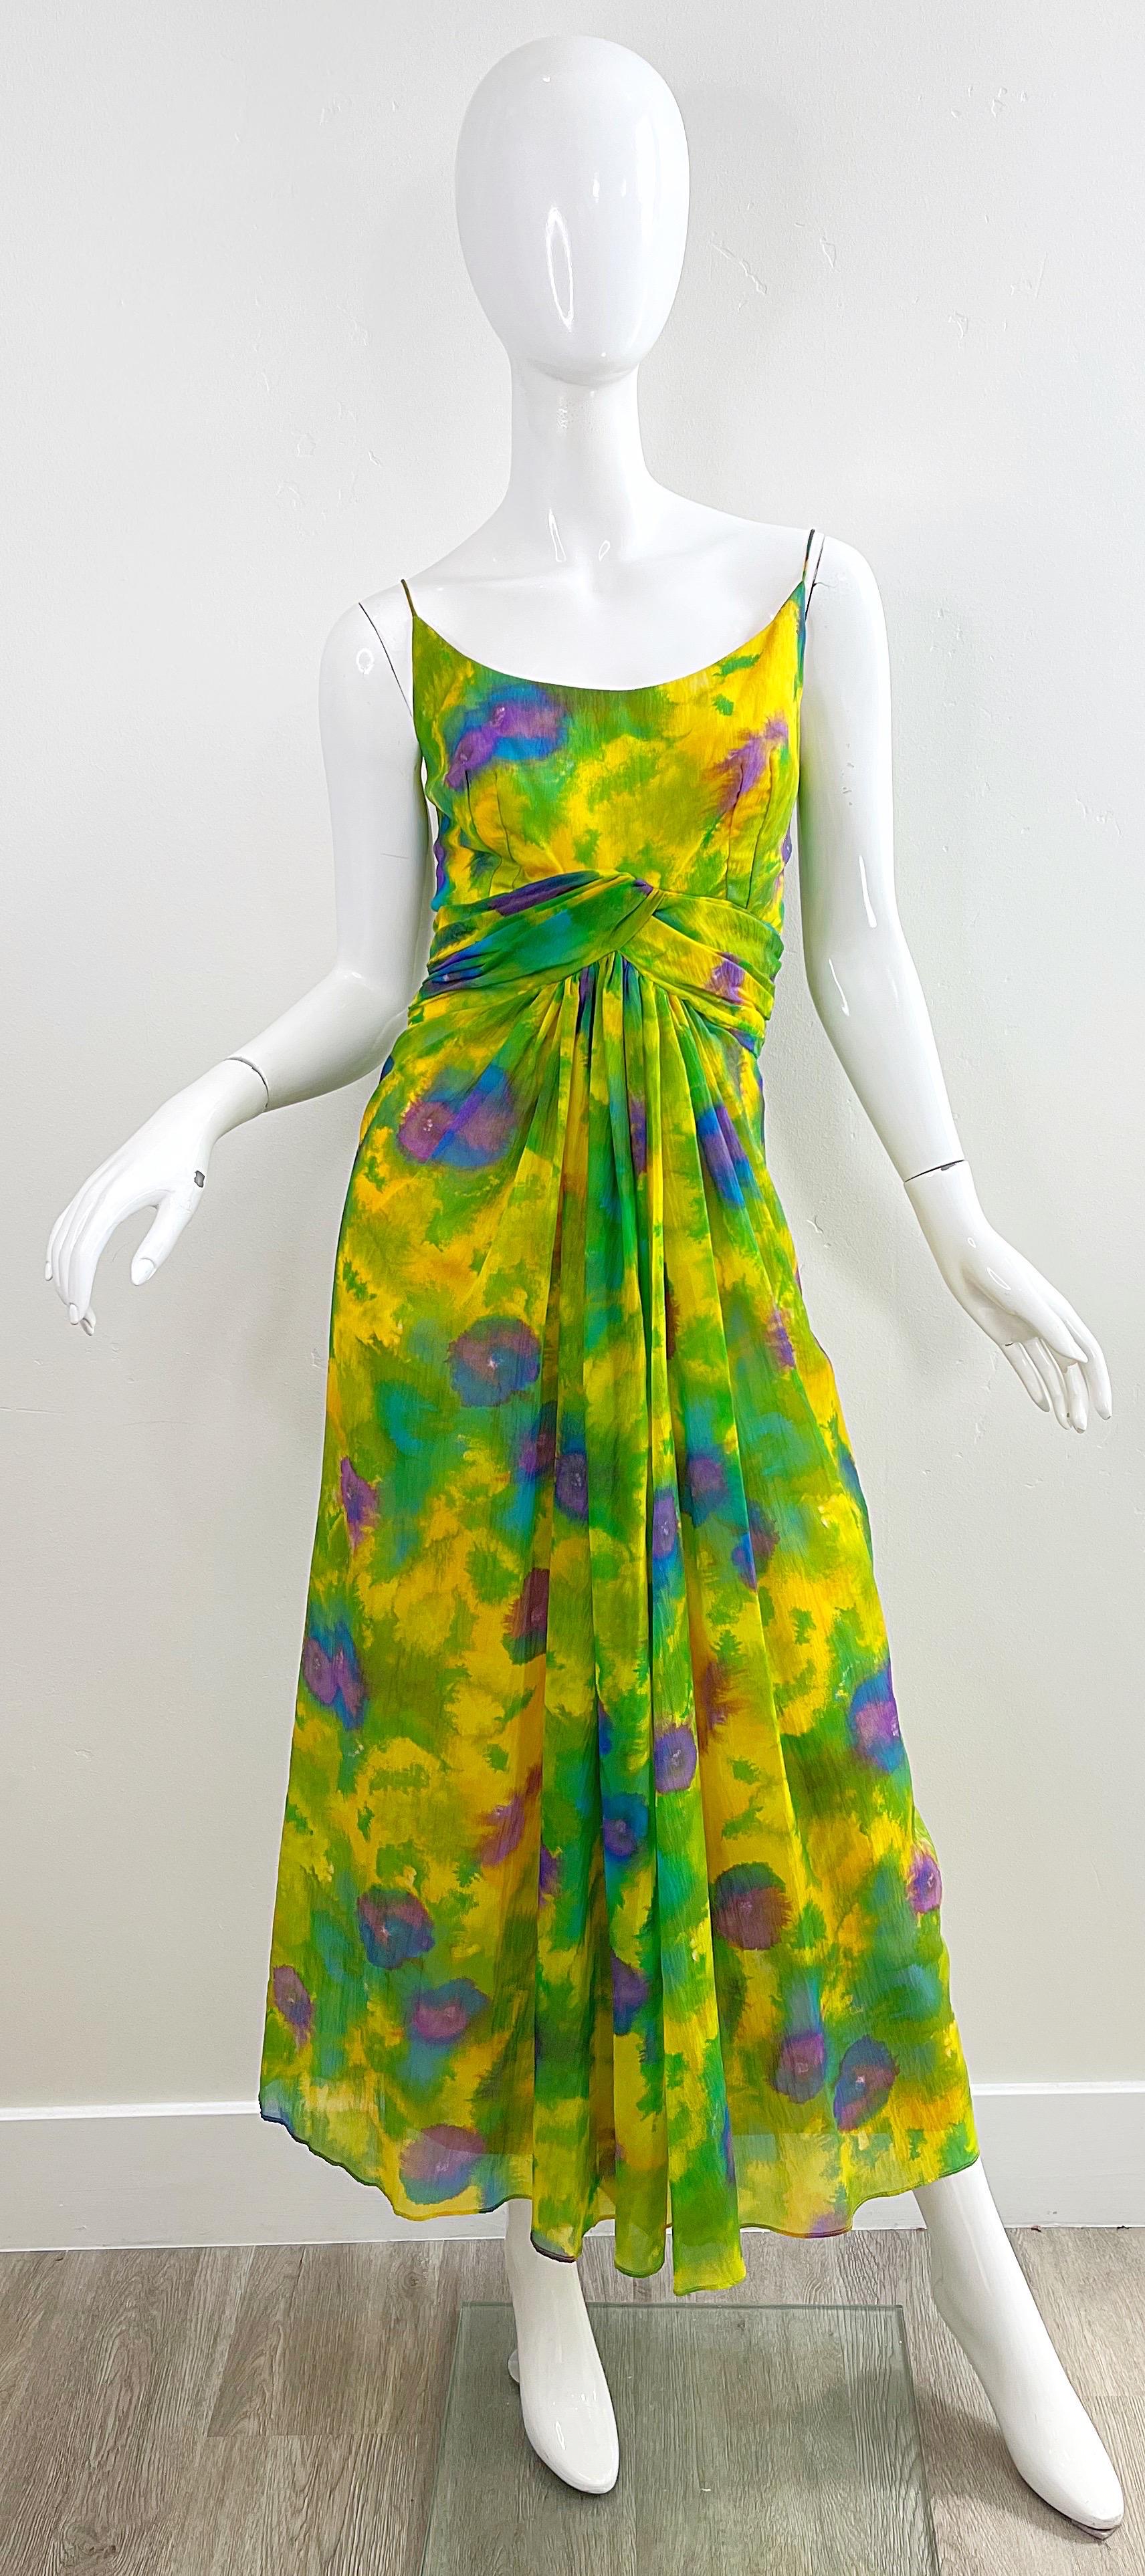 Schöner Vintage Anfang der 60er Jahre Demi Couture  Aquarell Seide Chiffon ärmelloses Kleid / Maxikleid ! Mit leuchtenden Farben in Gelb, Lila, Grün und Blau. Schmeichelhaftes gerafftes Detail an der Taille. Verdeckter Metallreißverschluss auf der